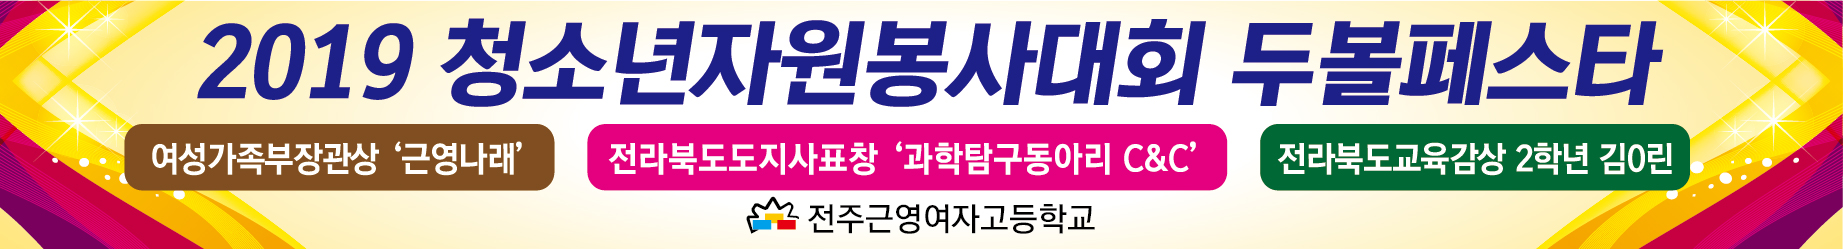 근영여고-자원봉사대회-두볼페스타-현수막.jpg